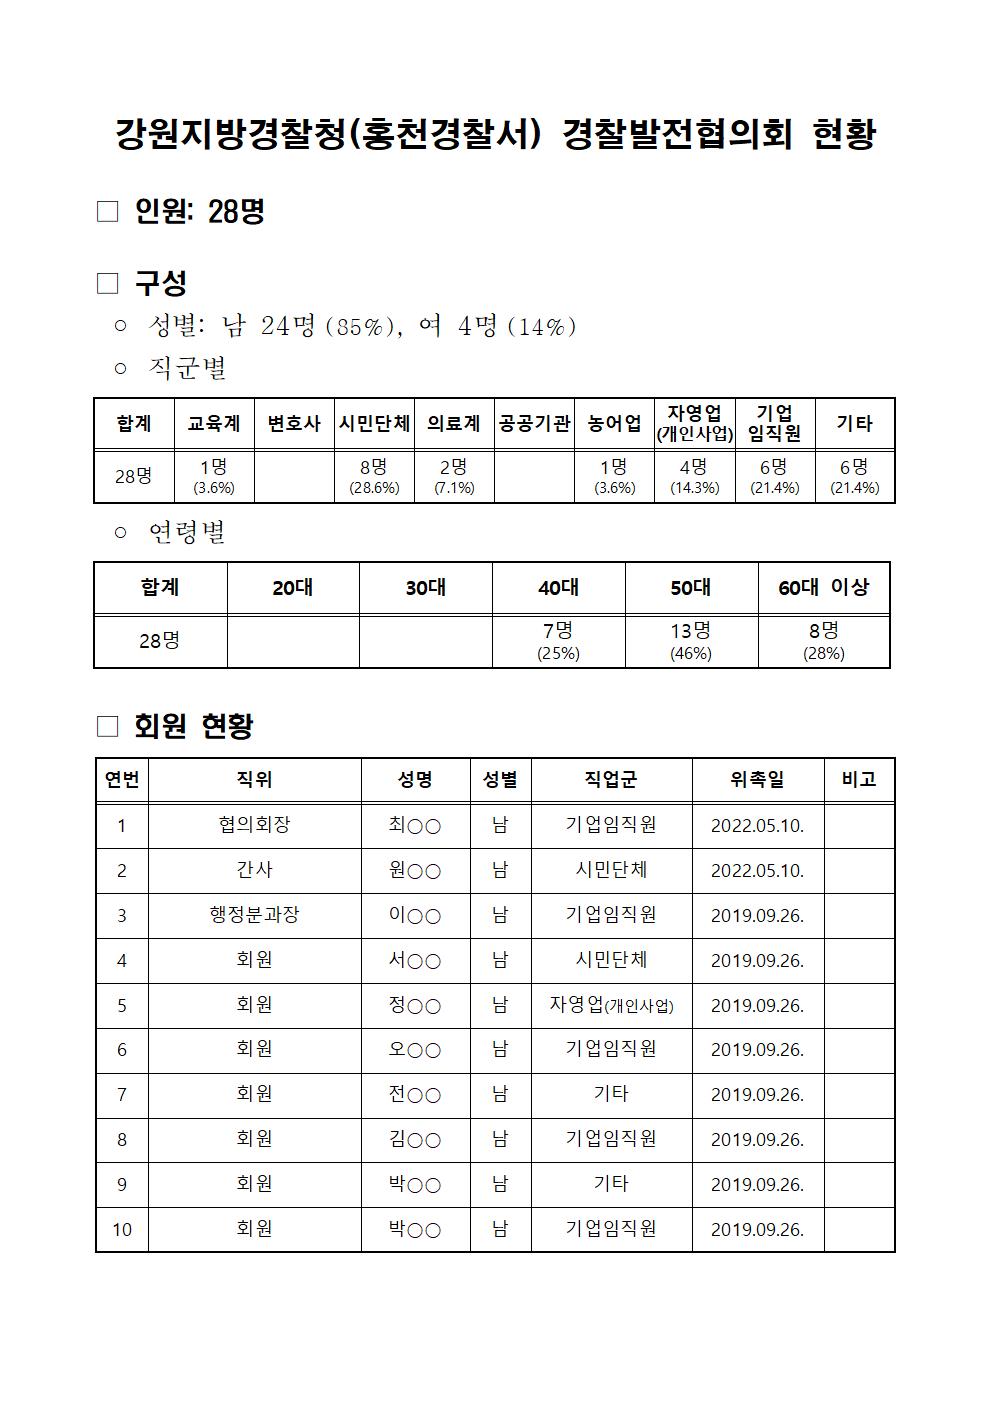 홍천경찰서 경찰발전협의회 현황-경발협구성현황(22년10월)001